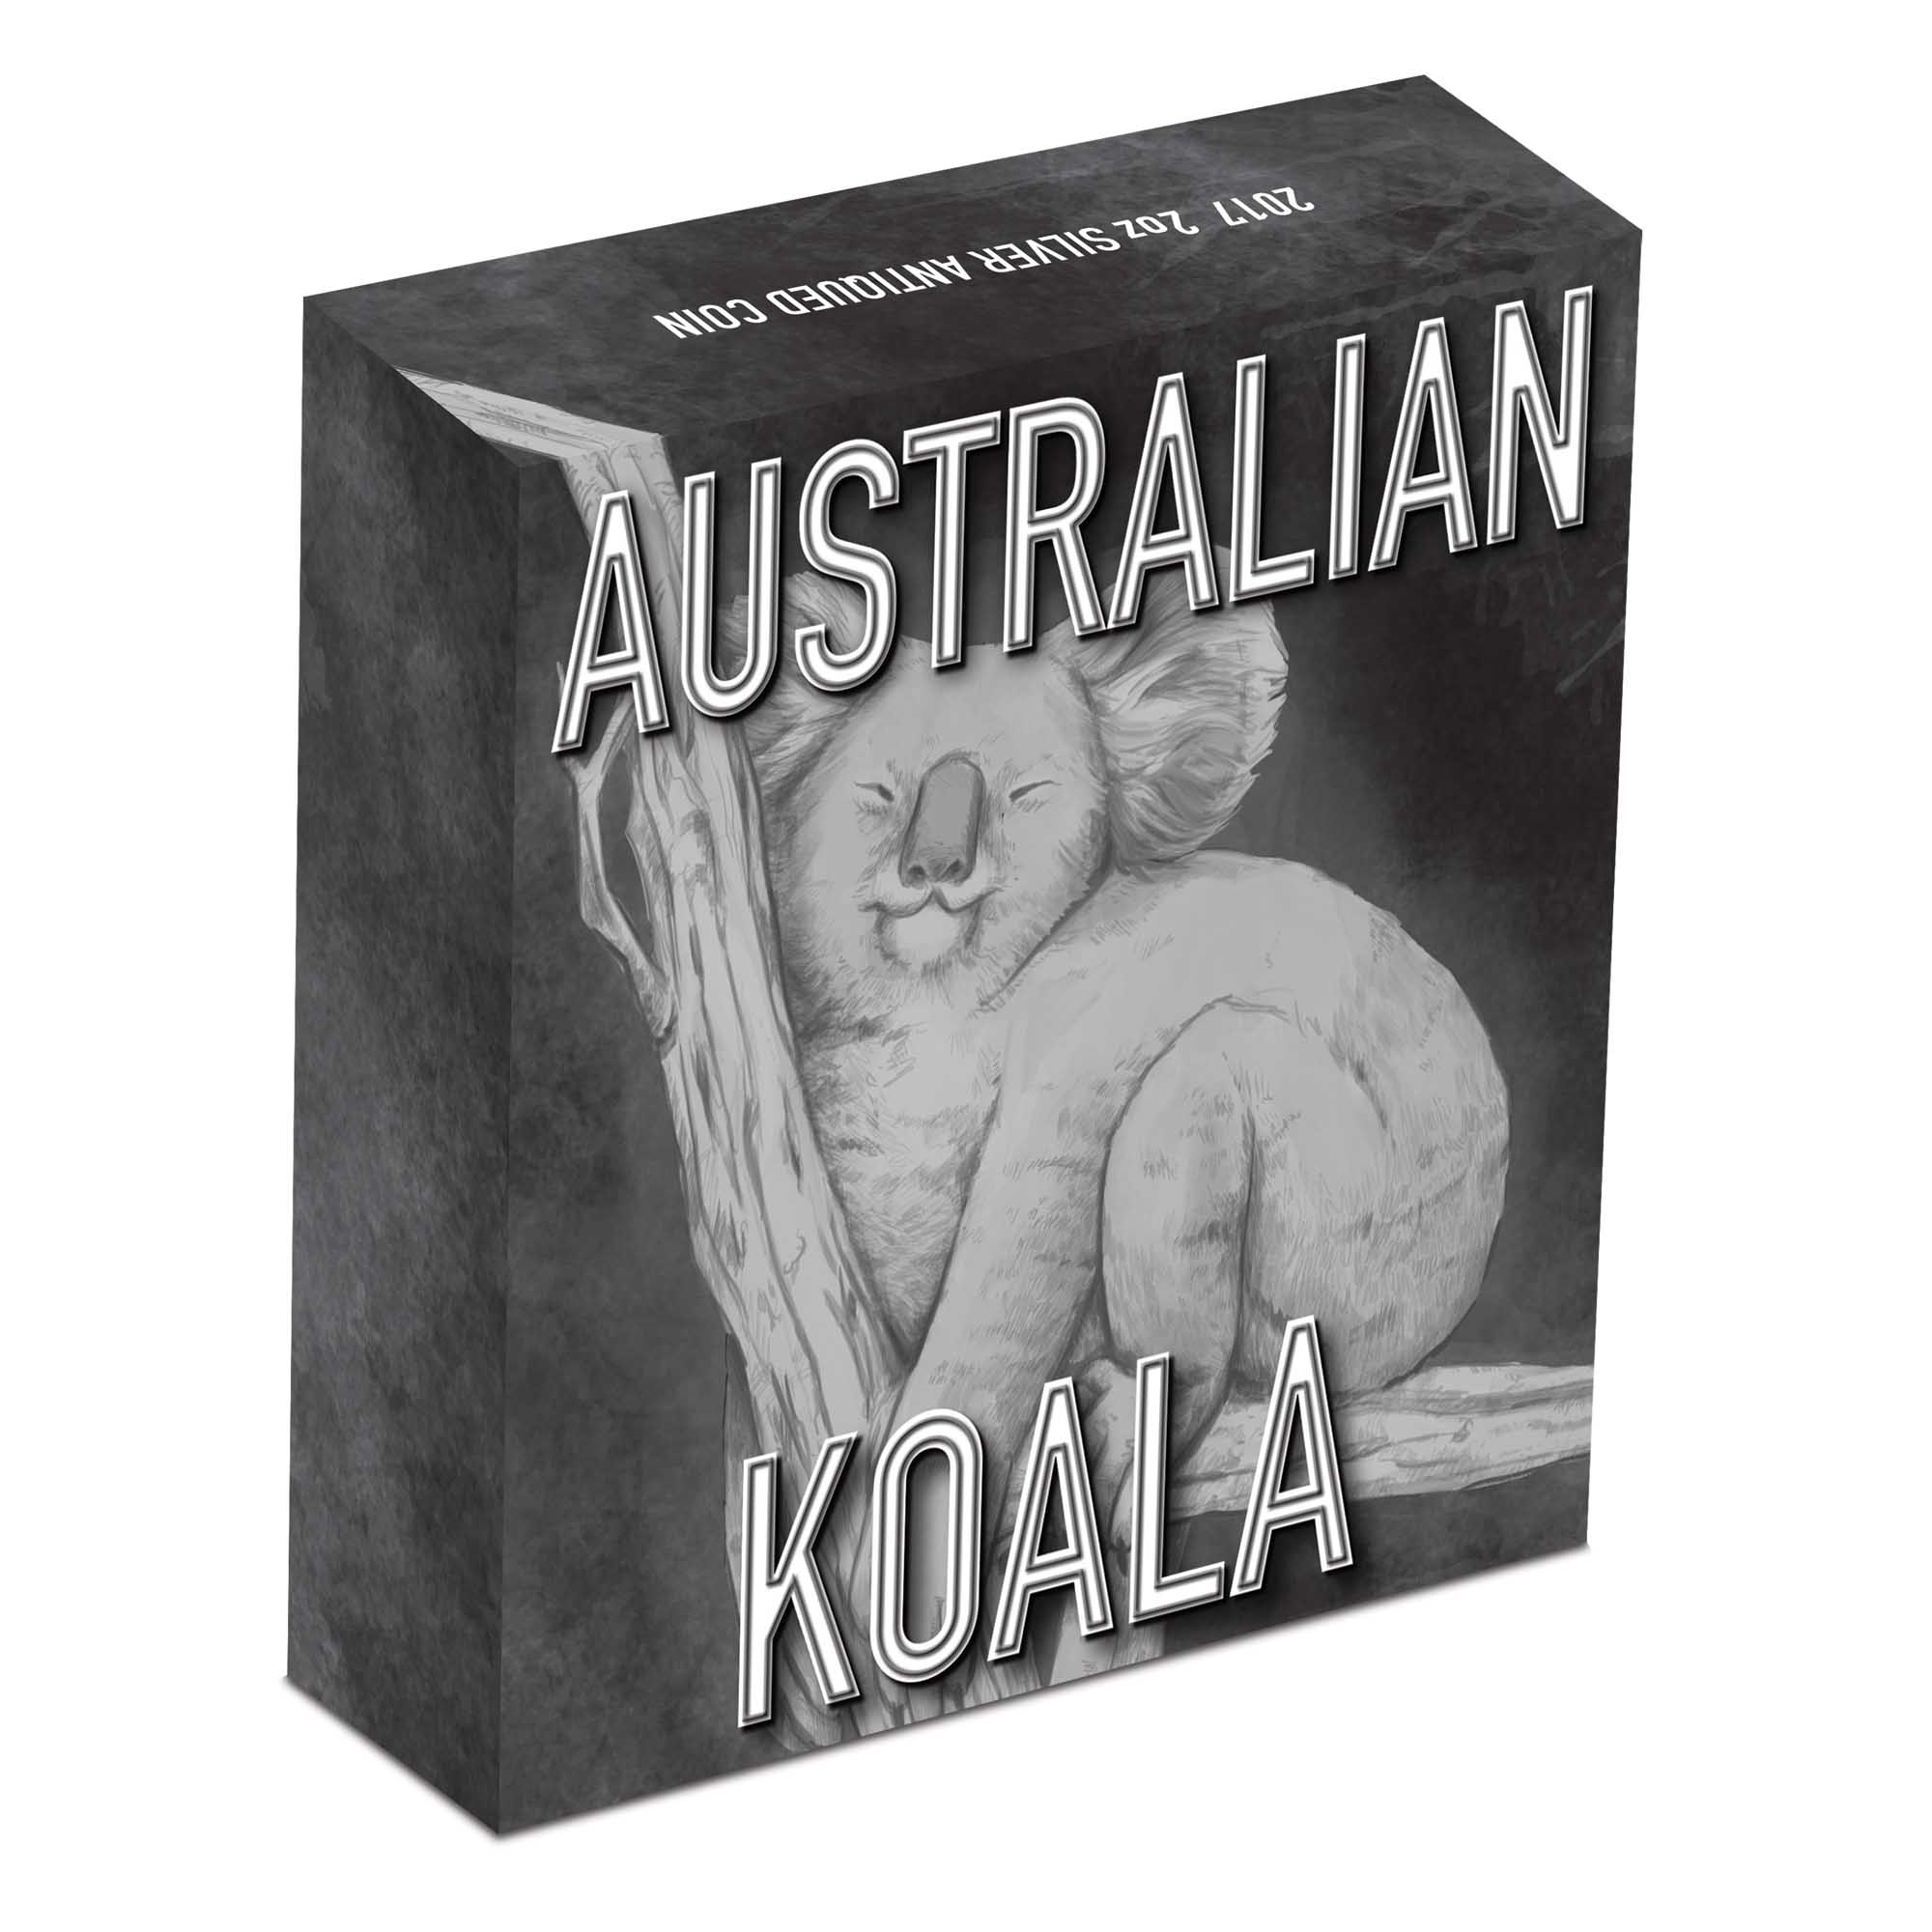 2017 P Australia HIGH RELIEF 1oz Silver Koala $1 Coin NGC PF70 ER NEW LABEL COA 